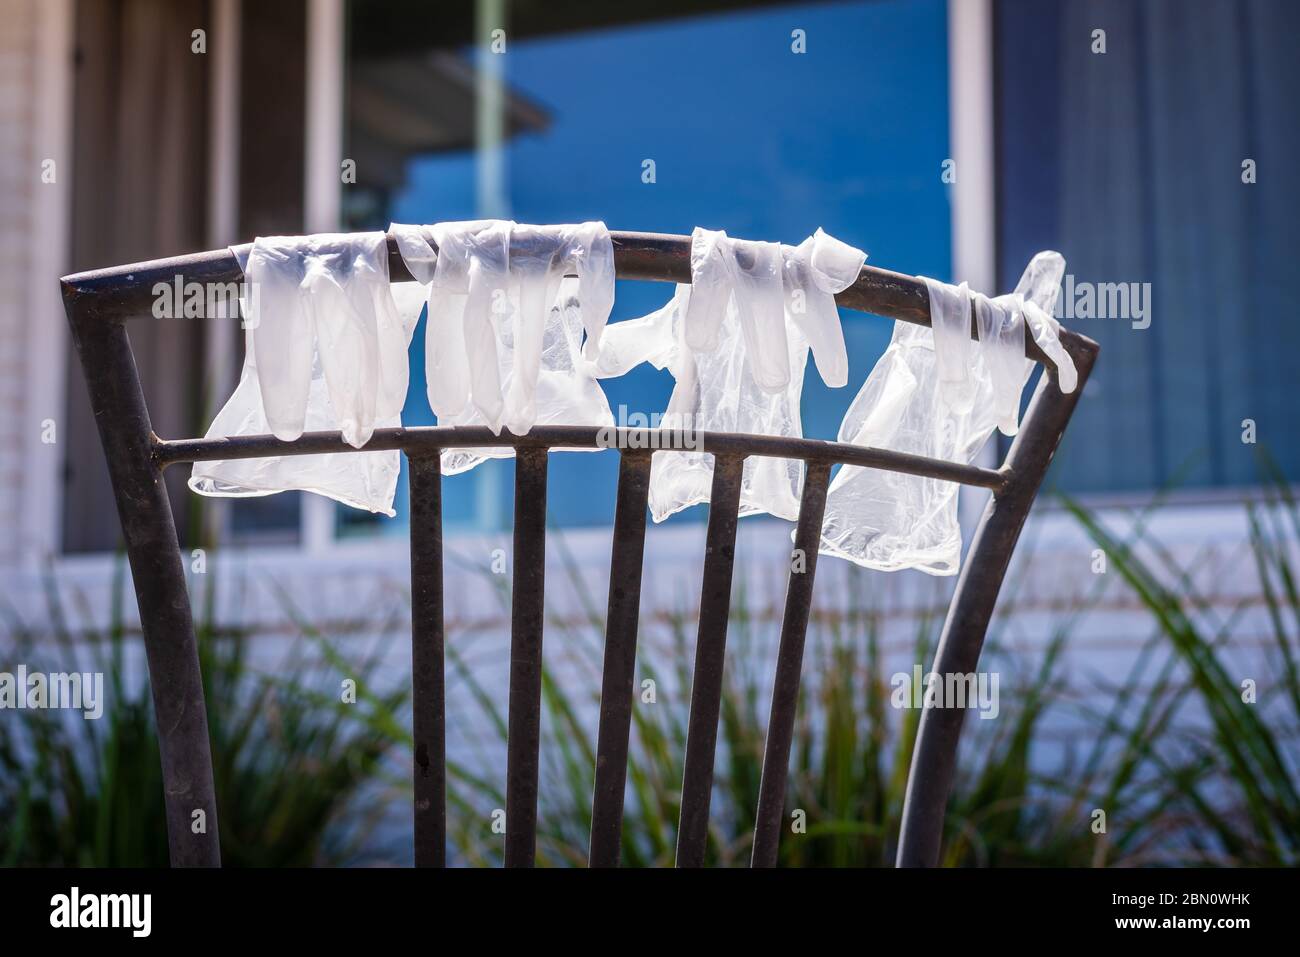 Guanti in plastica monouso lavati che si aggancano sul retro della sedia per asciugare durante la pandemia di Covid-19. Foto Stock